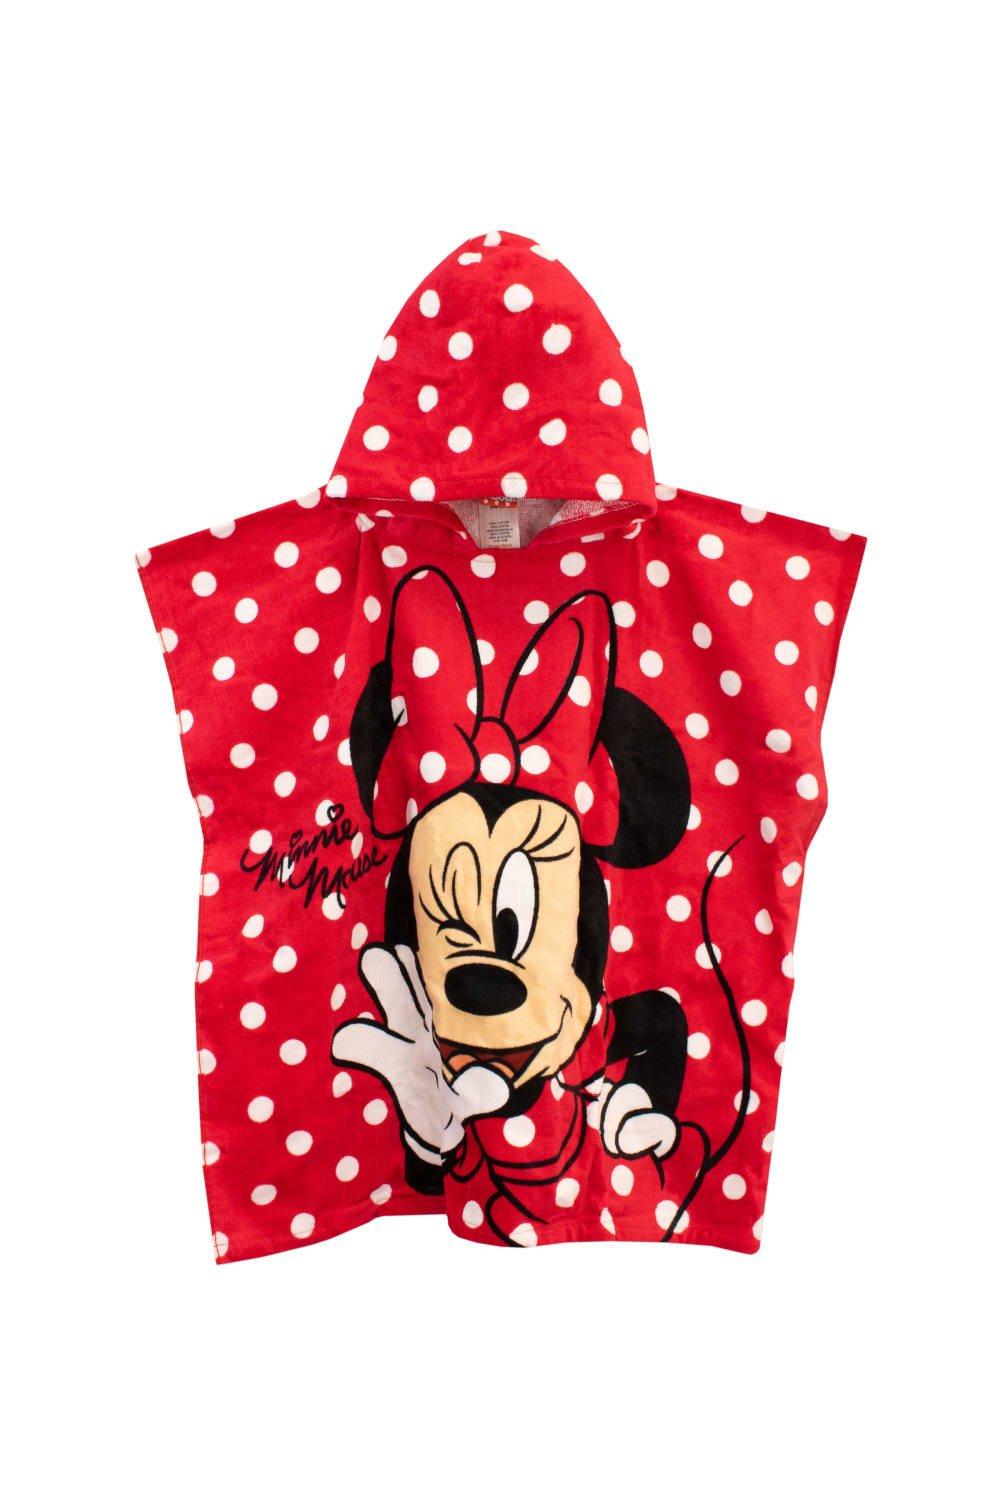 Полотенце-пончо с капюшоном Минни Маус Disney, красный полотенца forest kids полотенце с капюшоном little dots